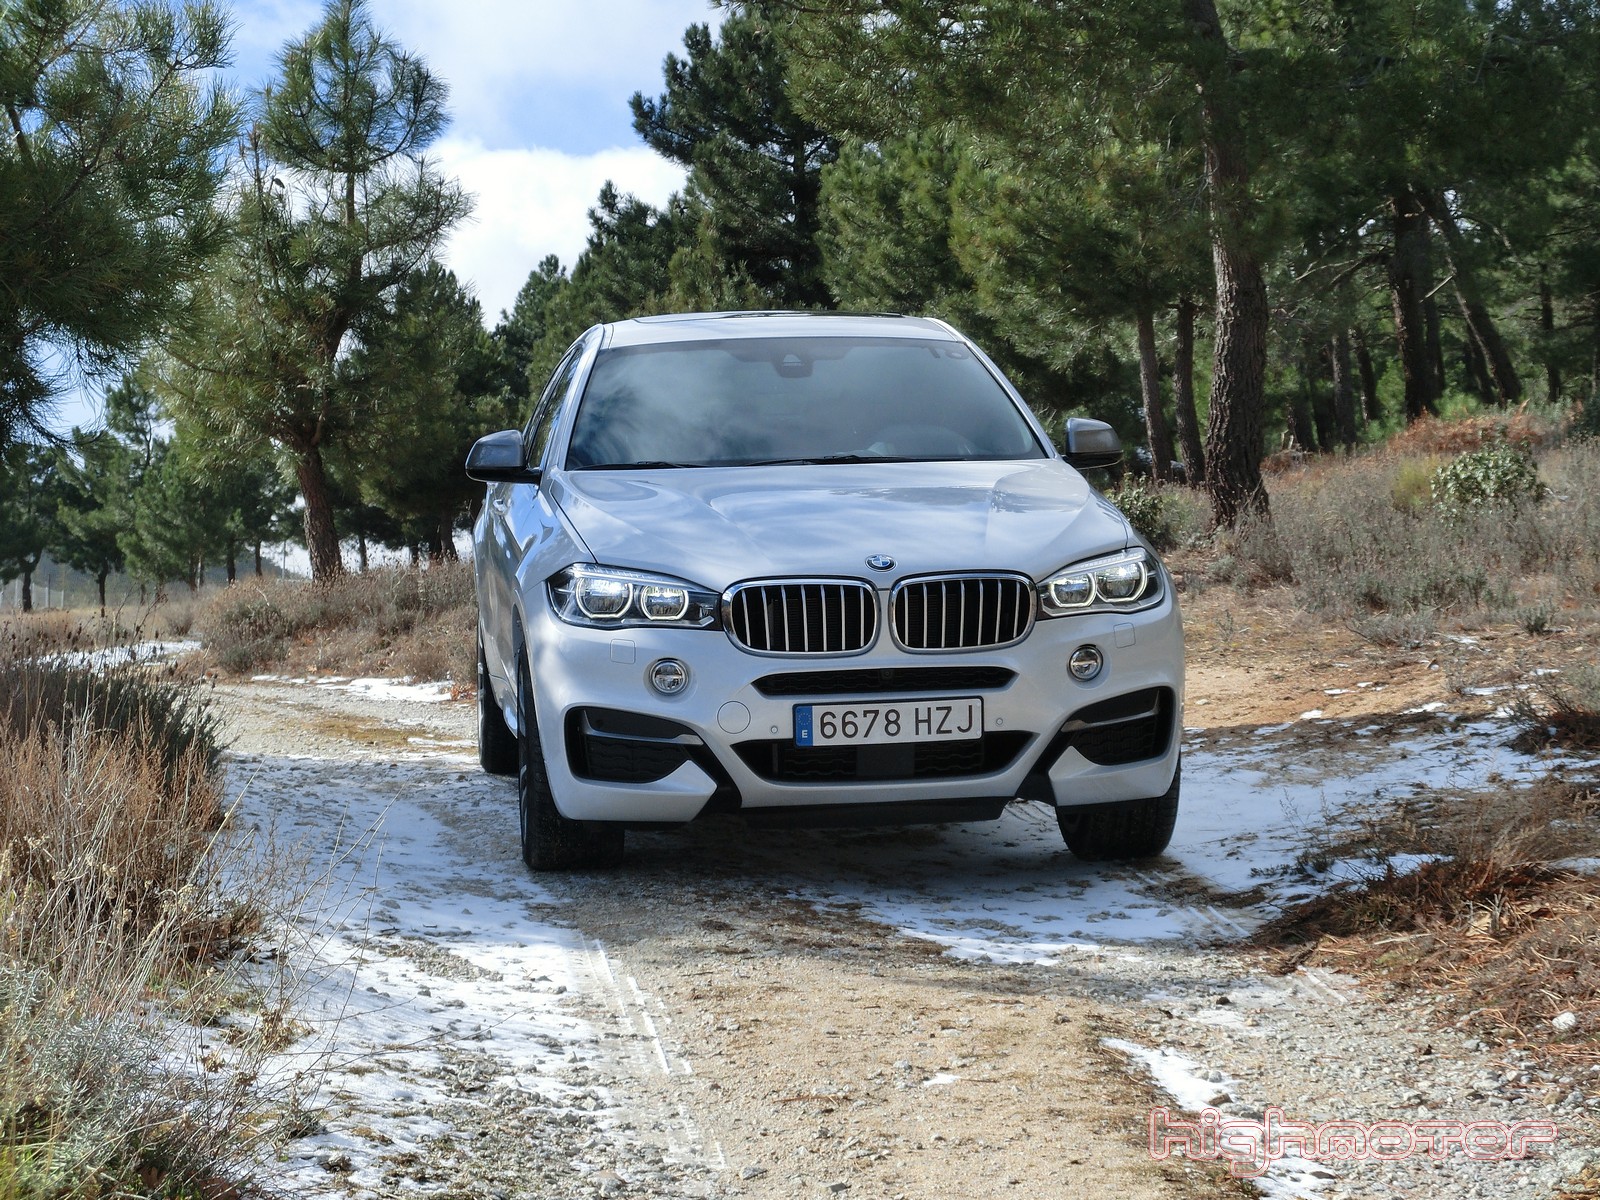 Nuevo BMW X6 2015, presentación y prueba en Madrid